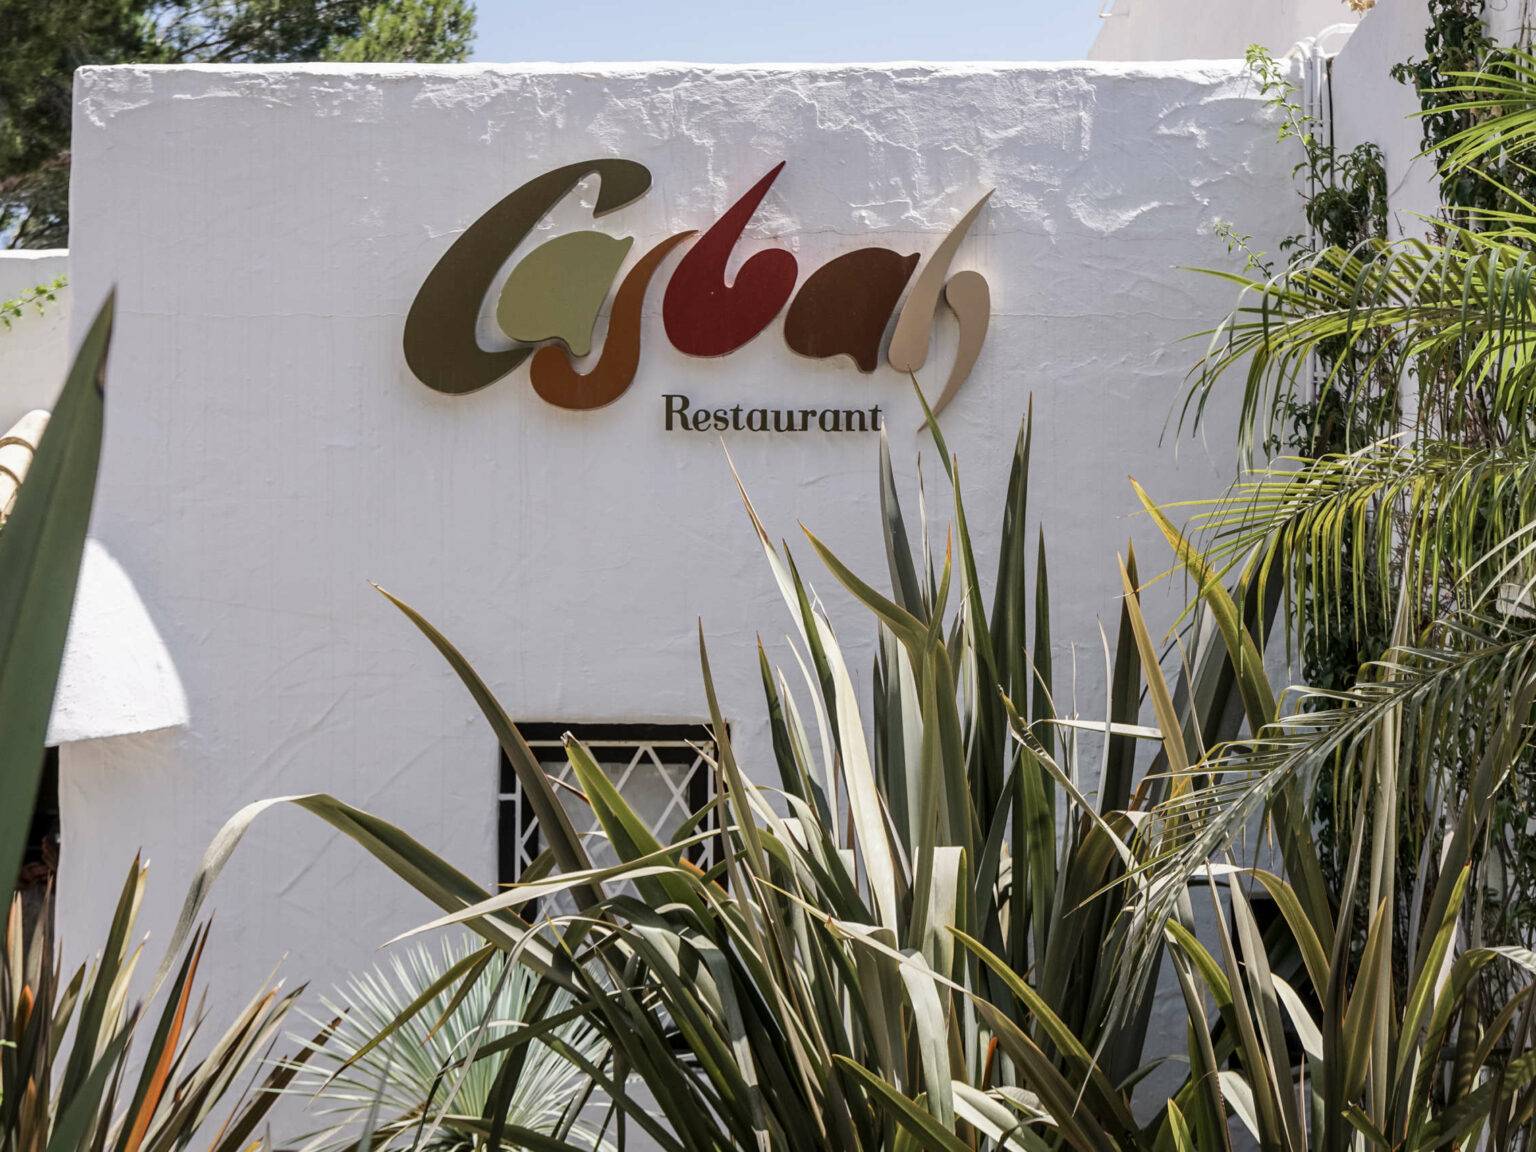 Die Unterkunft Hotel Casbah auf Formentera beherbergt auch ein Restaurant und empfiehlt sich für eine Reise.